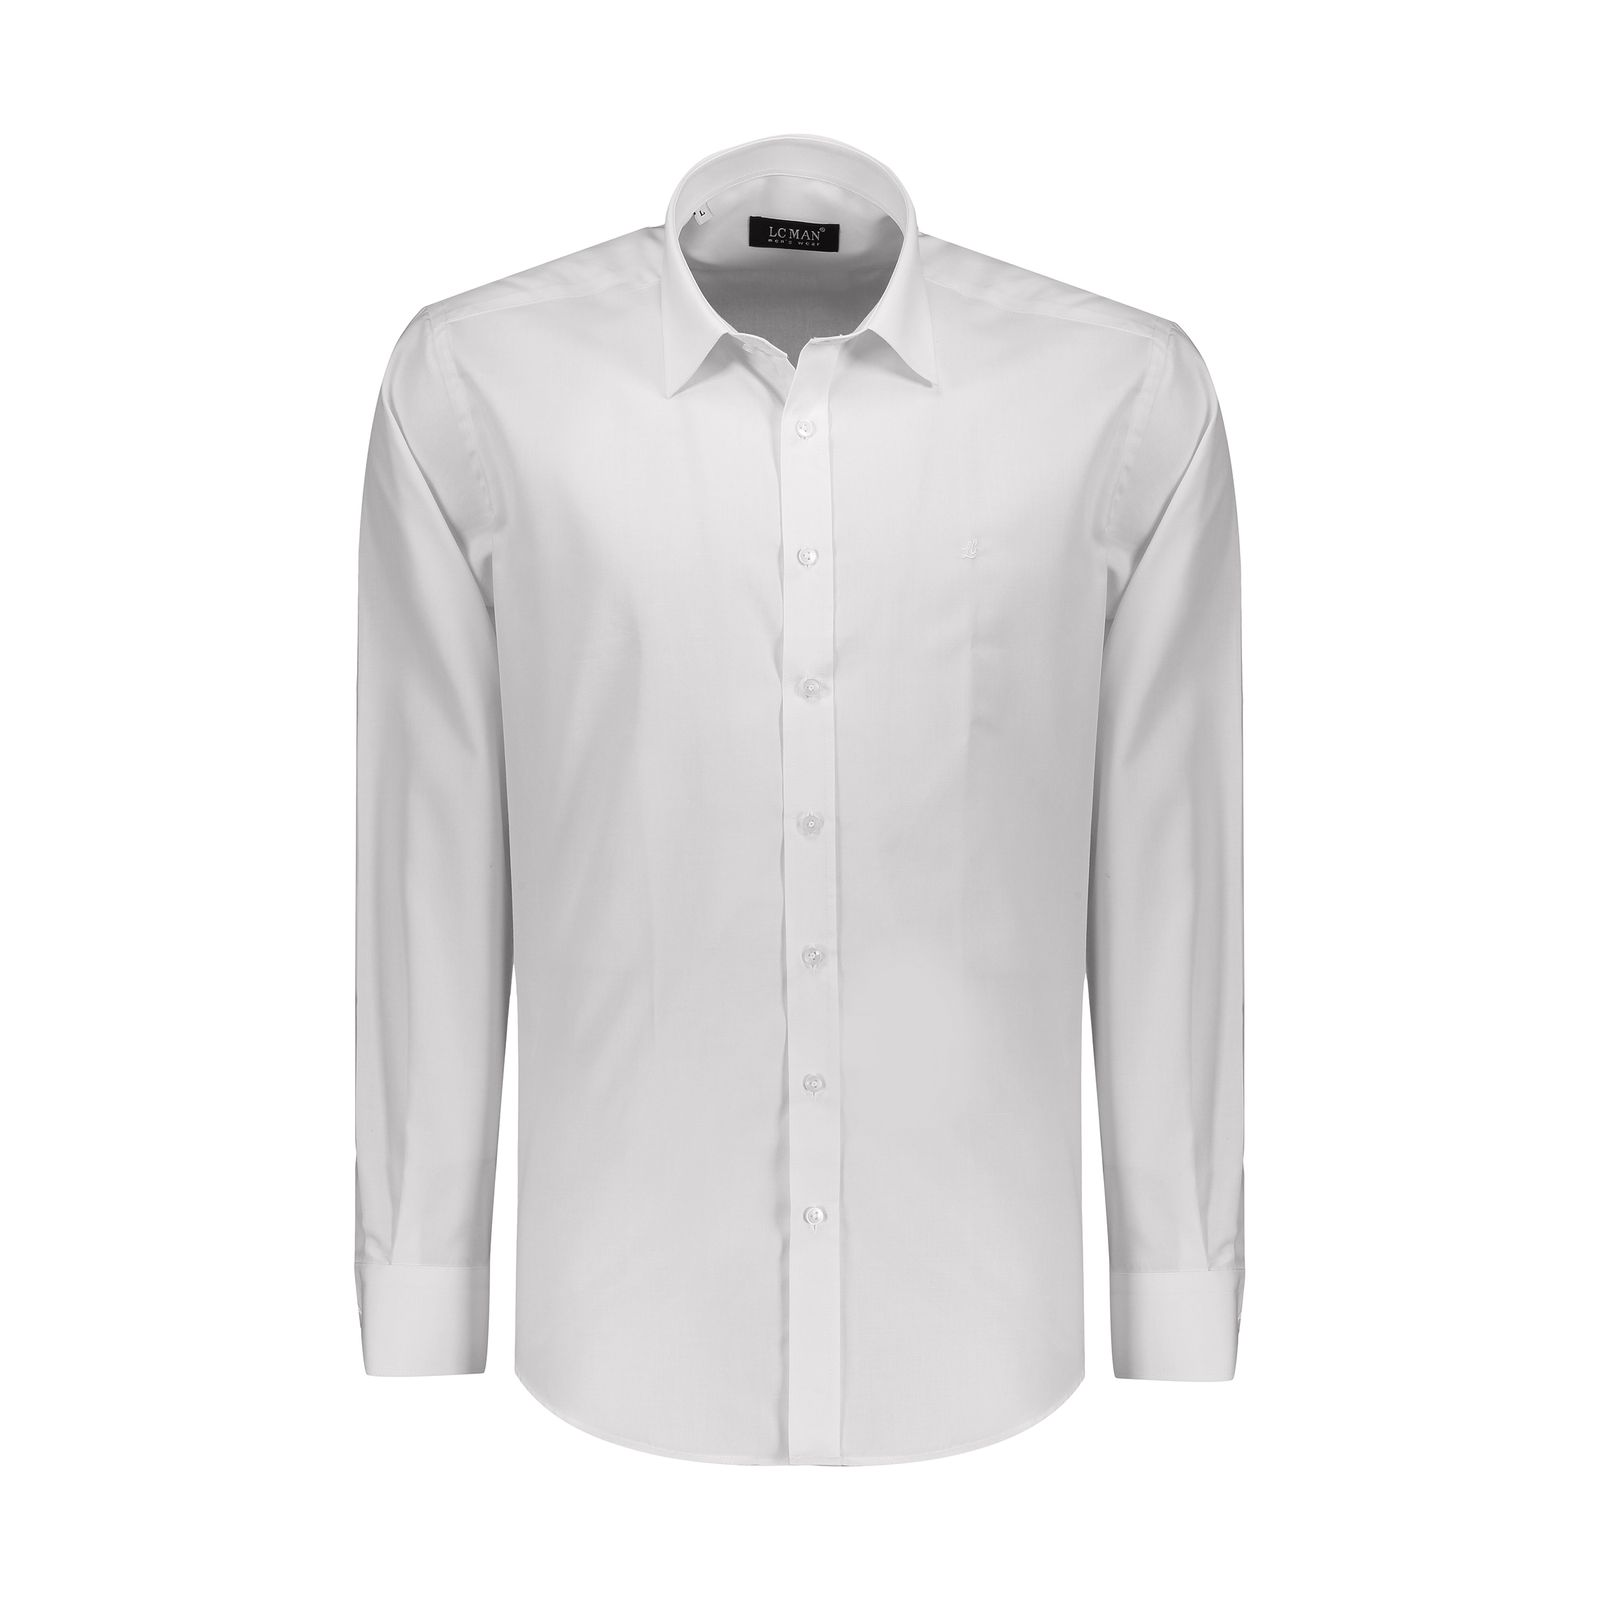 پیراهن مردانه ال سی من مدل 02181197-001 -  - 1